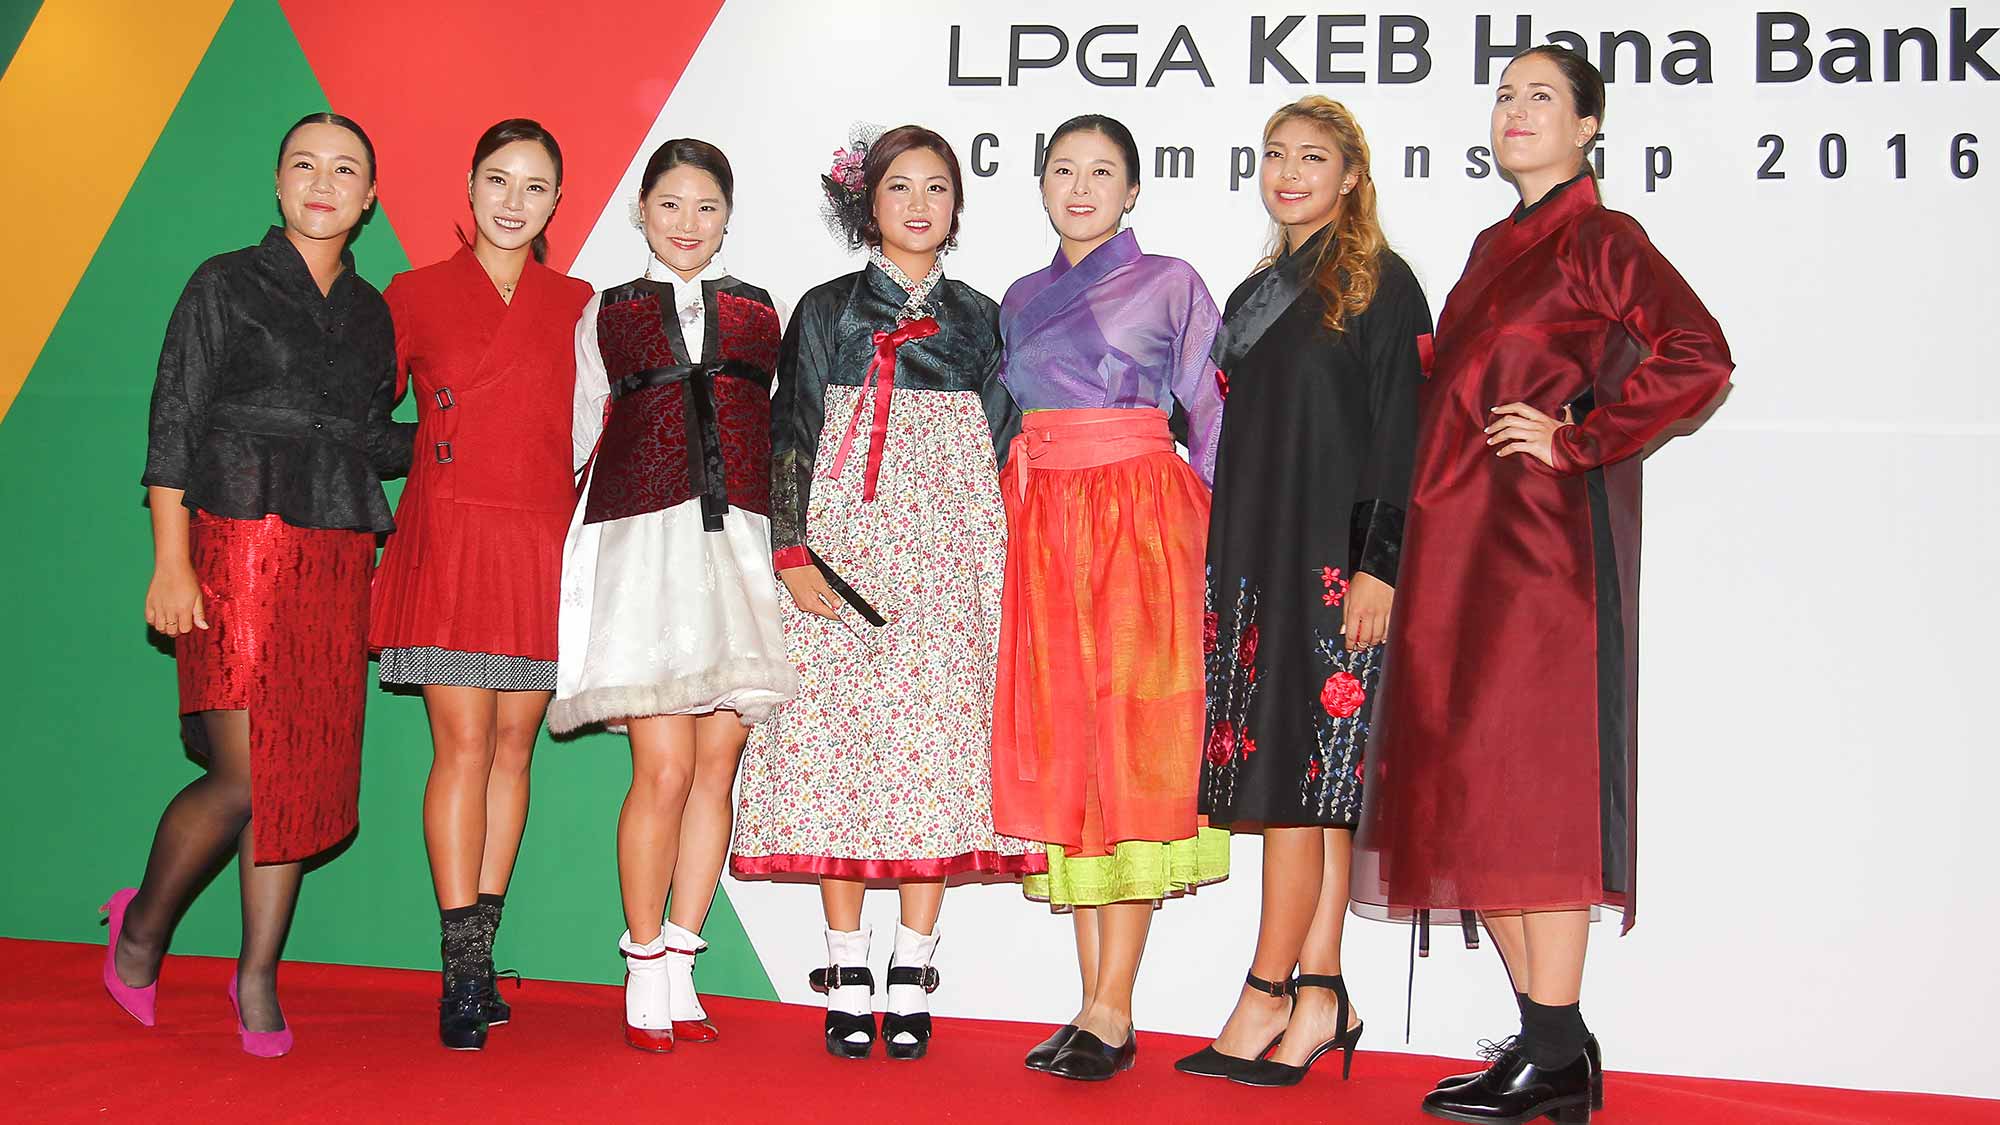 Players pose for a photo at the LPGA KEB Hana Bank Pro-Am Party